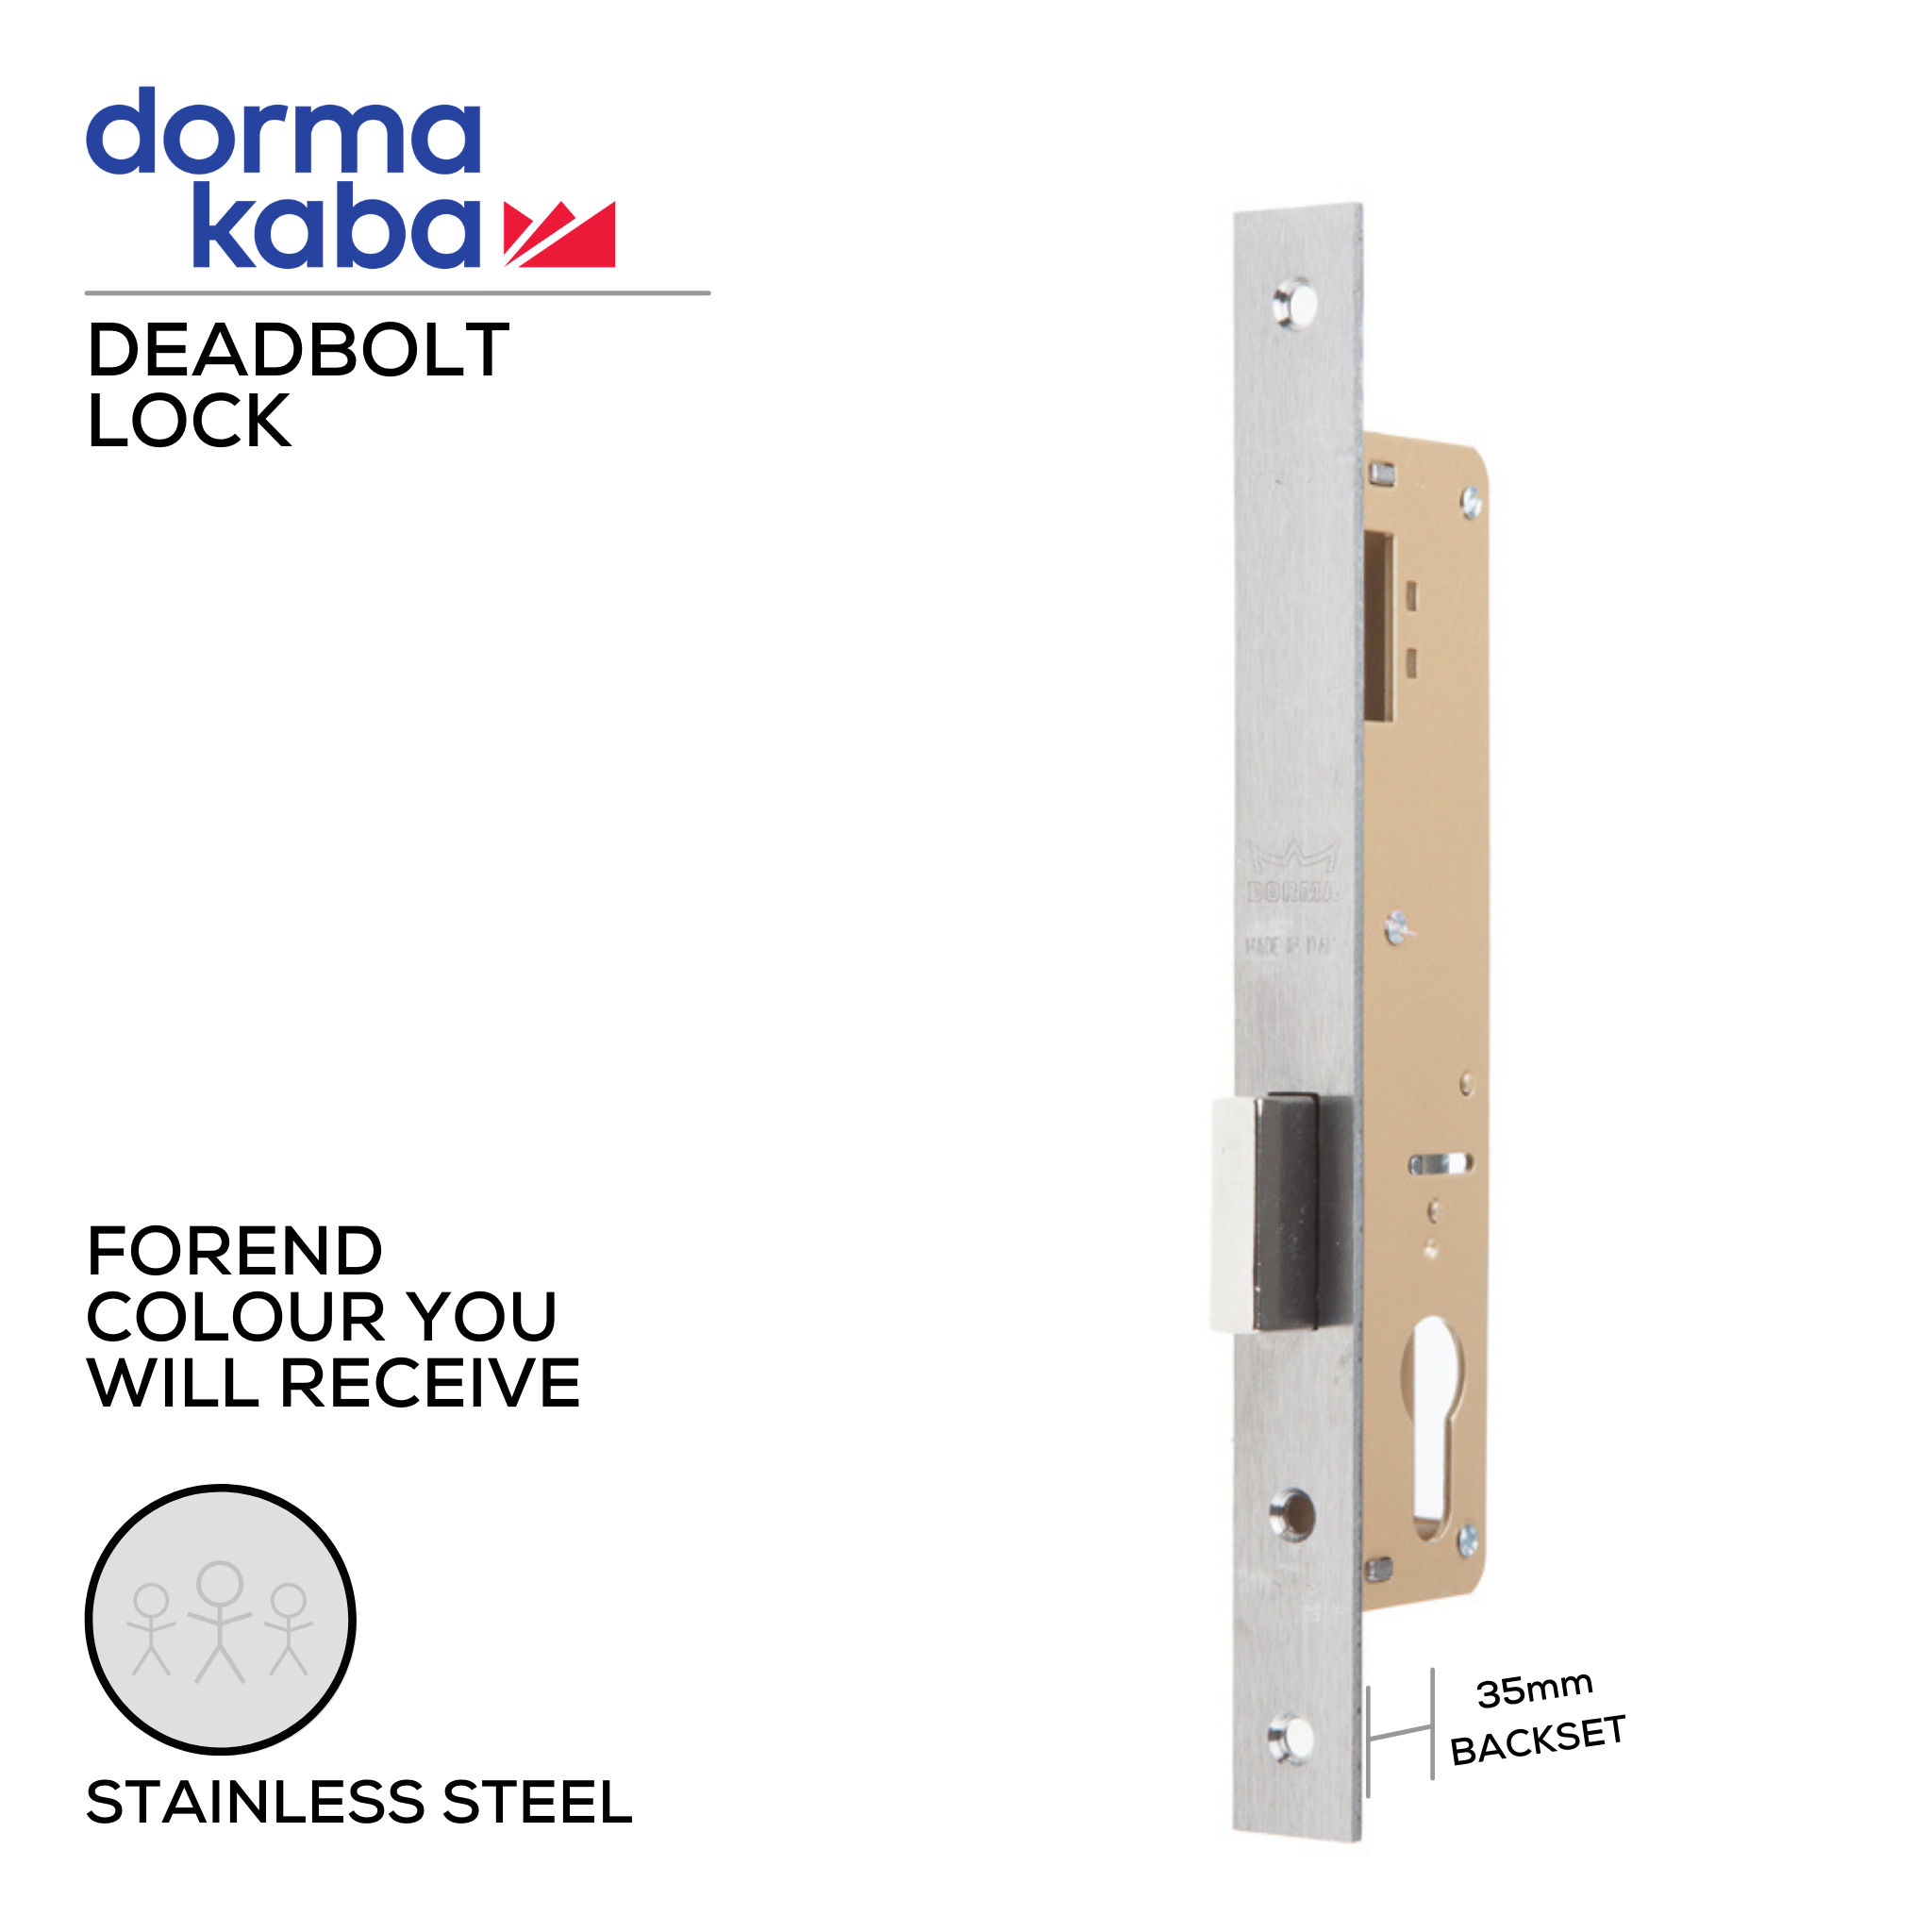 D02725 35mm, Deadbolt Lock, Euro Cylinder, Excluding Cylinder, 35mm (Backset), Stainless Steel, DORMAKABA